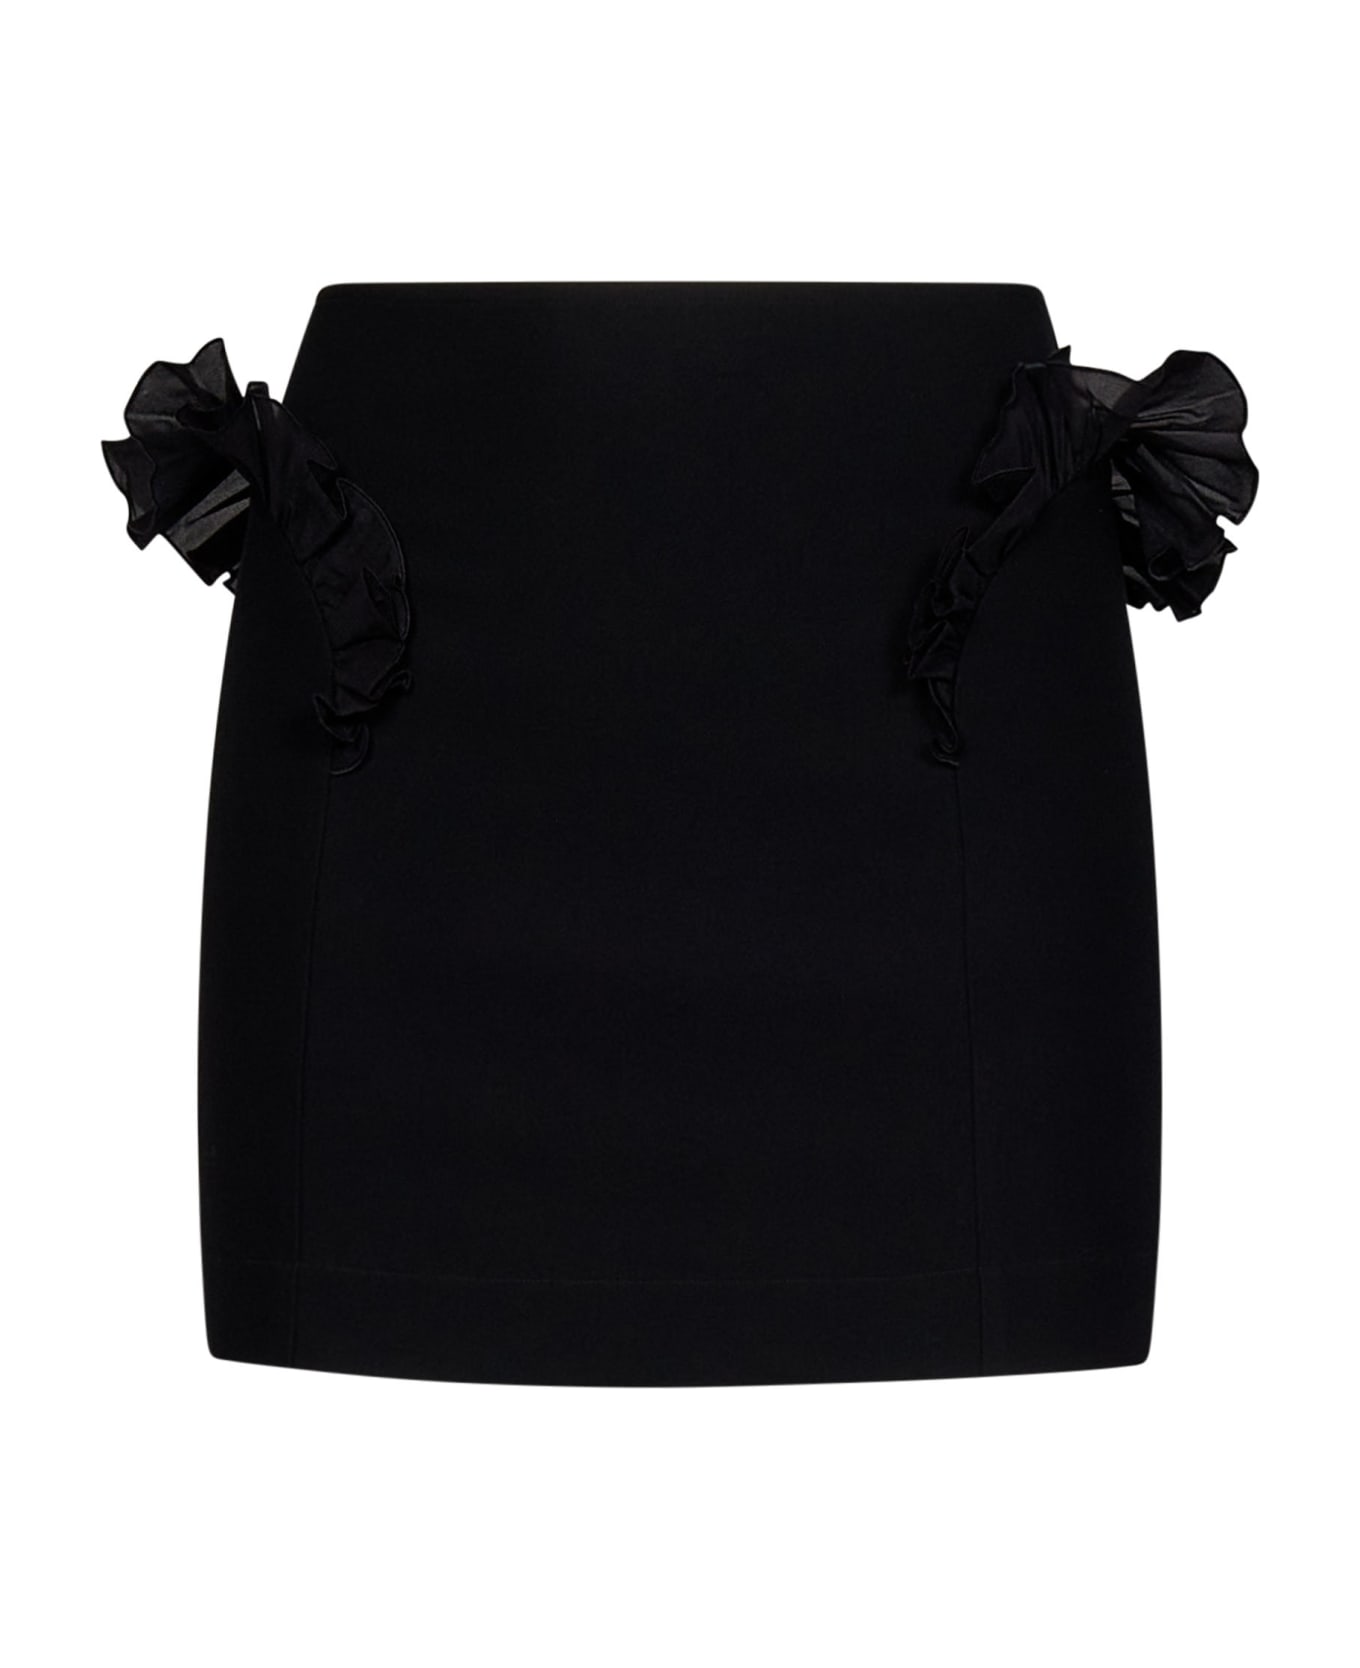 Nensi Dojaka Mini Skirt - BLACK スカート